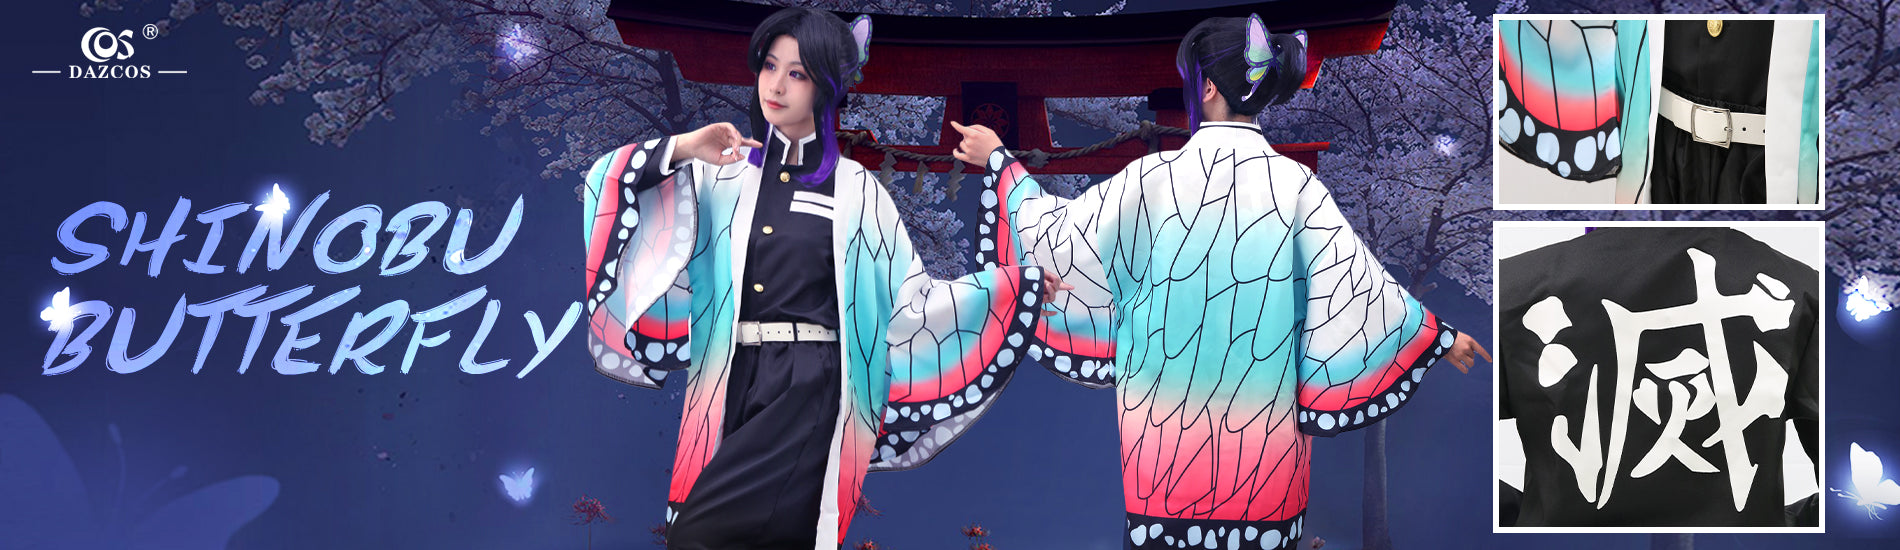 Shinobu Butterfly Cosplay Costume details